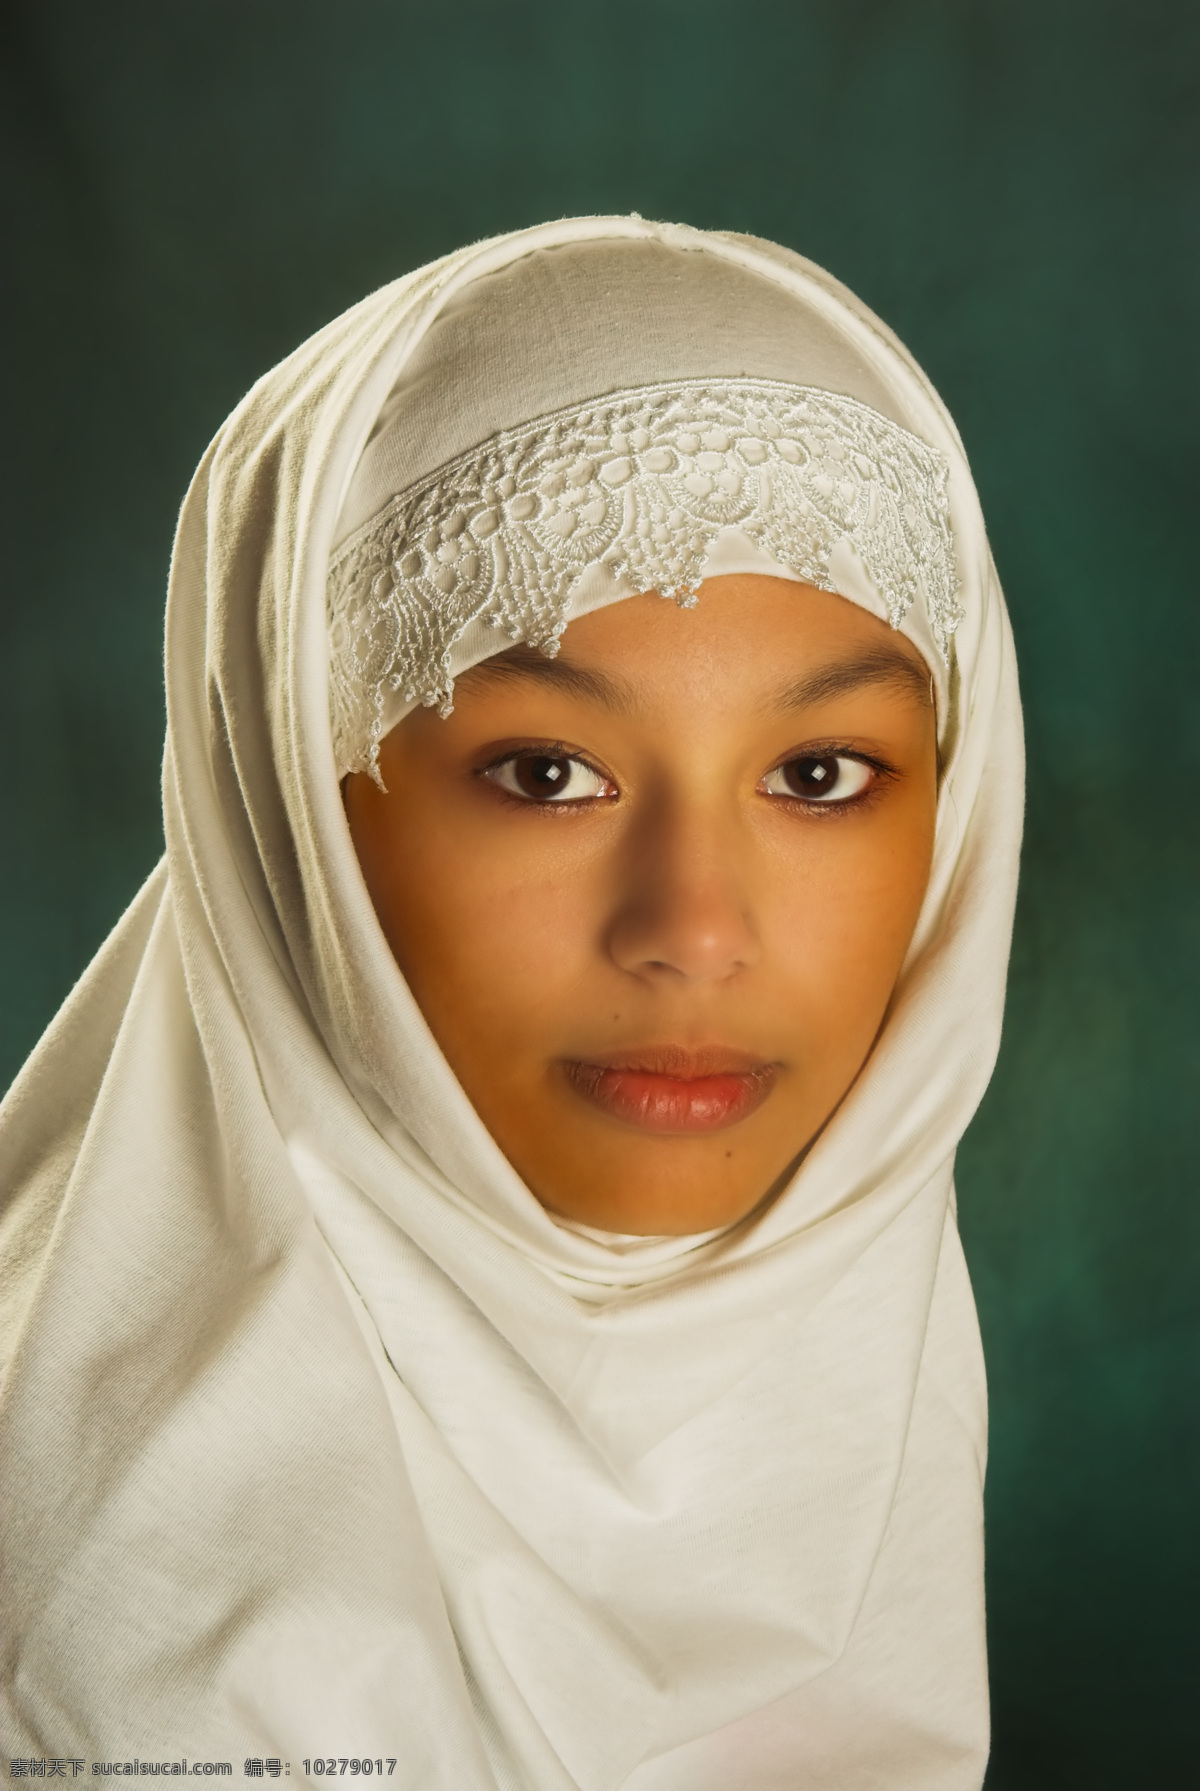 戴 白色 头巾 外国 女人 白色头巾 围巾 美女 眼睛 外国人物 人体器官图 人物图片